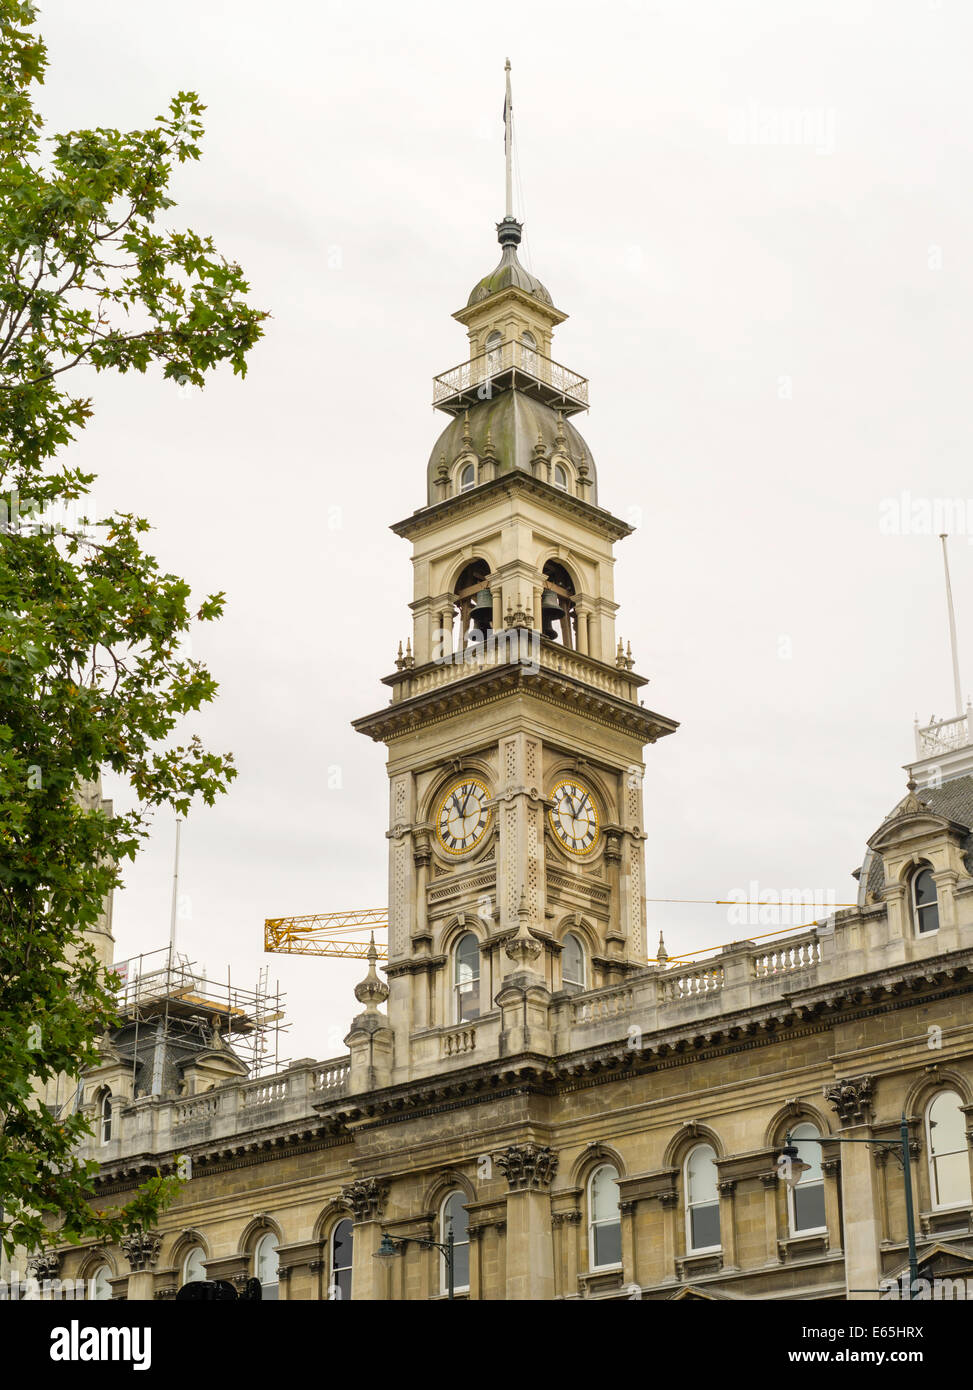 Dunedin Town Hall on the Octagon, on an overcast day, Dunedin, New Zealand Stock Photo